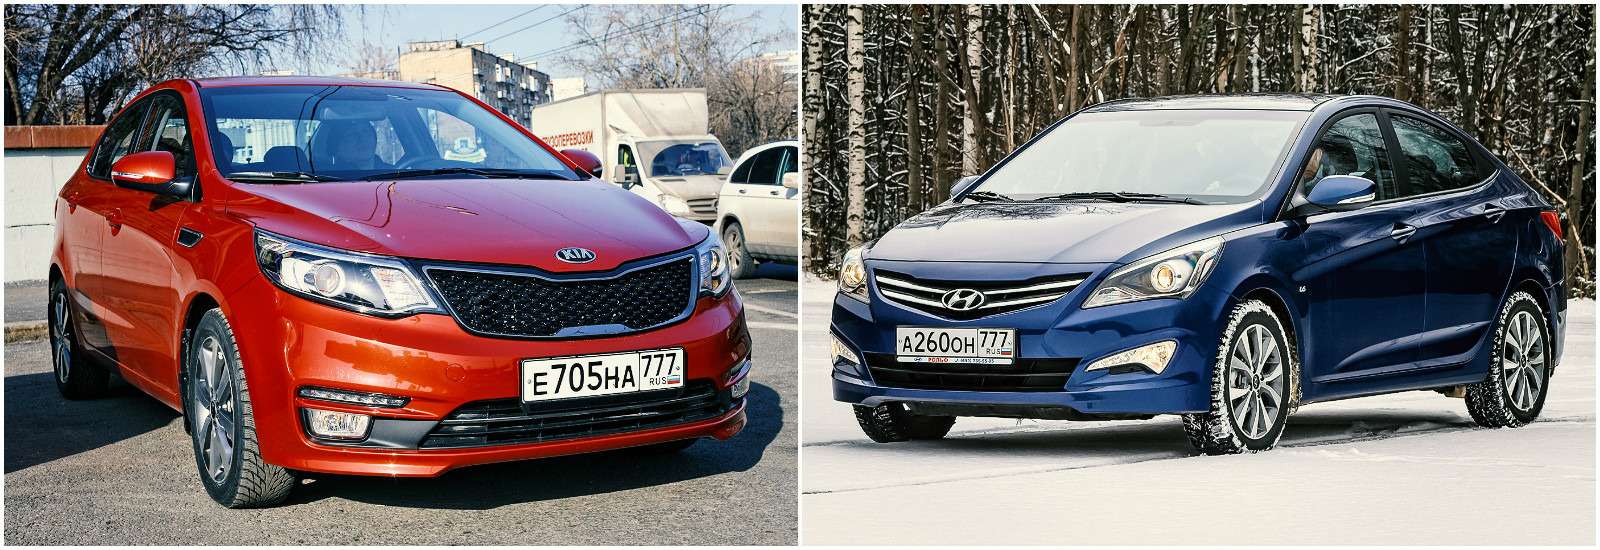 Kia Rio и Hyundai Solaris внешне разные, в остальном — близки. Kia если и дороже, то совсем ненамного.